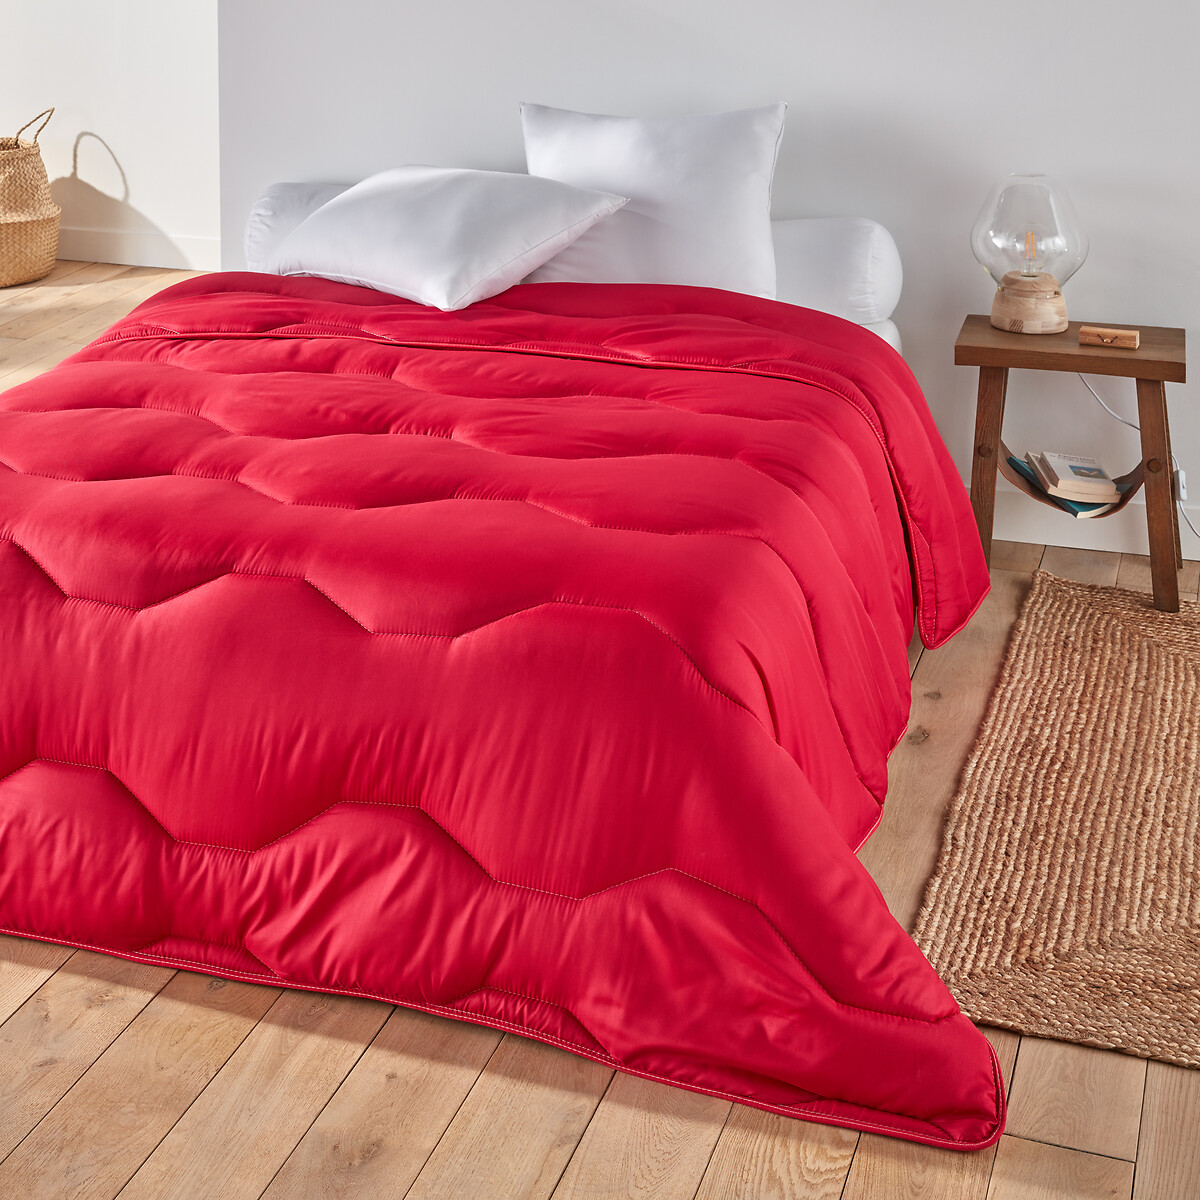 Одеяло La Redoute COLOR  полиэстера  гм 140 x 200 см красный, размер 140 x 200 см - фото 1